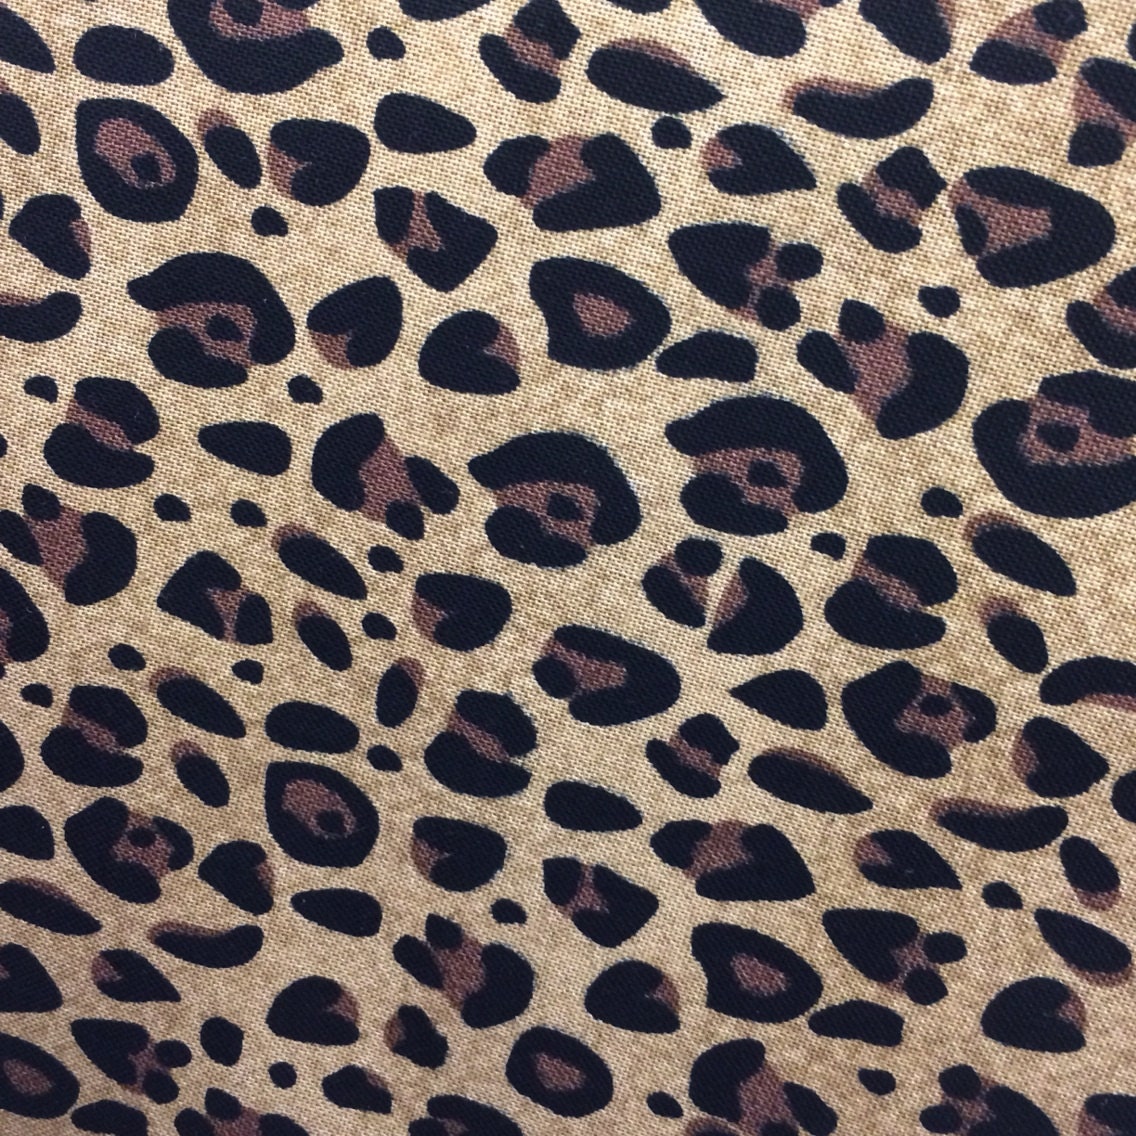 Leopard Print Fabric 1 YARD